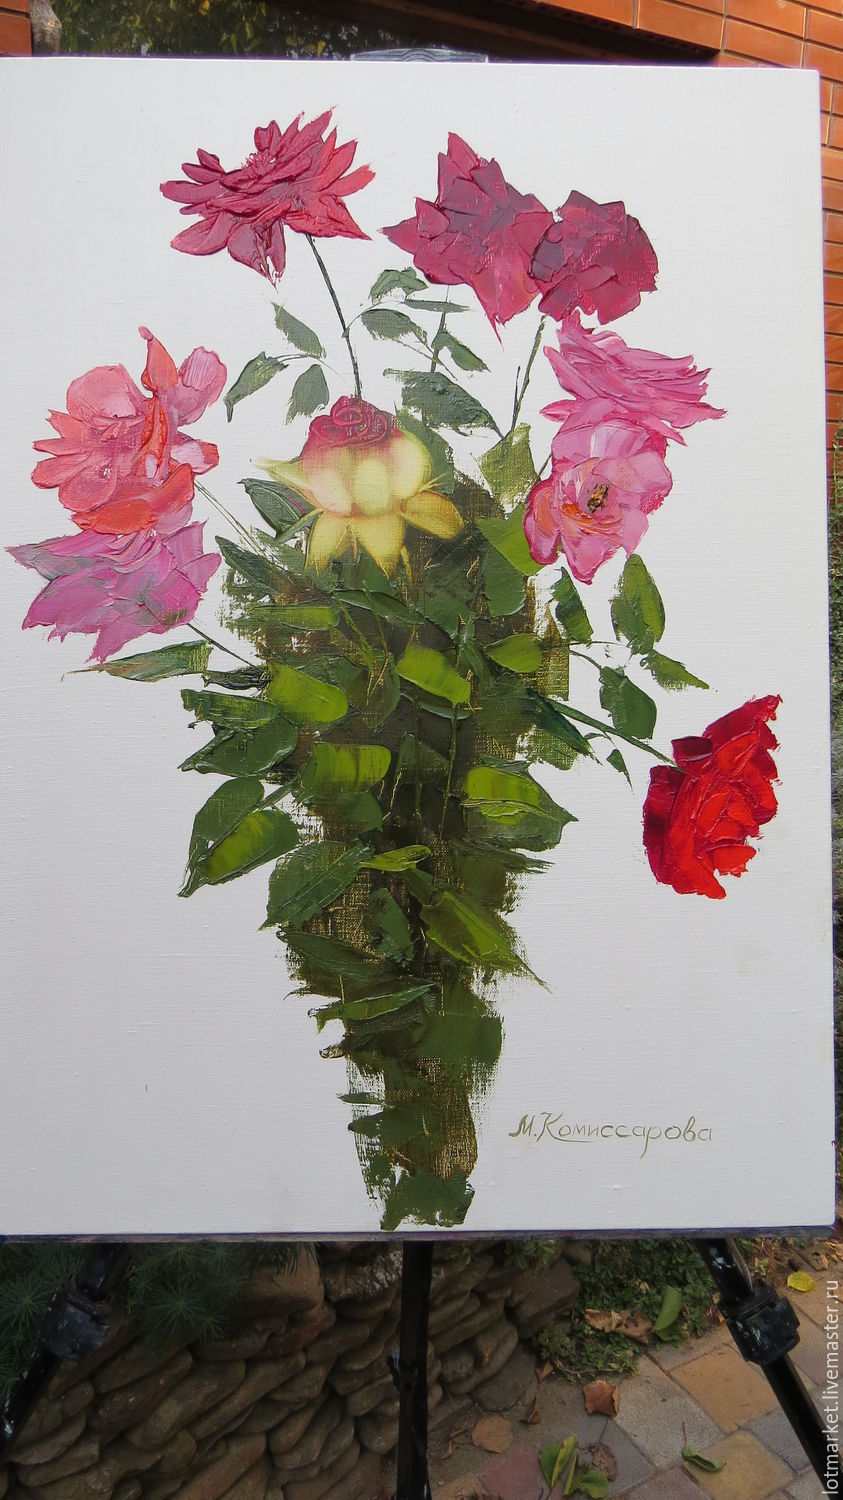 a ec ec0b49c7554bdz oil picture bouquet of garden roses